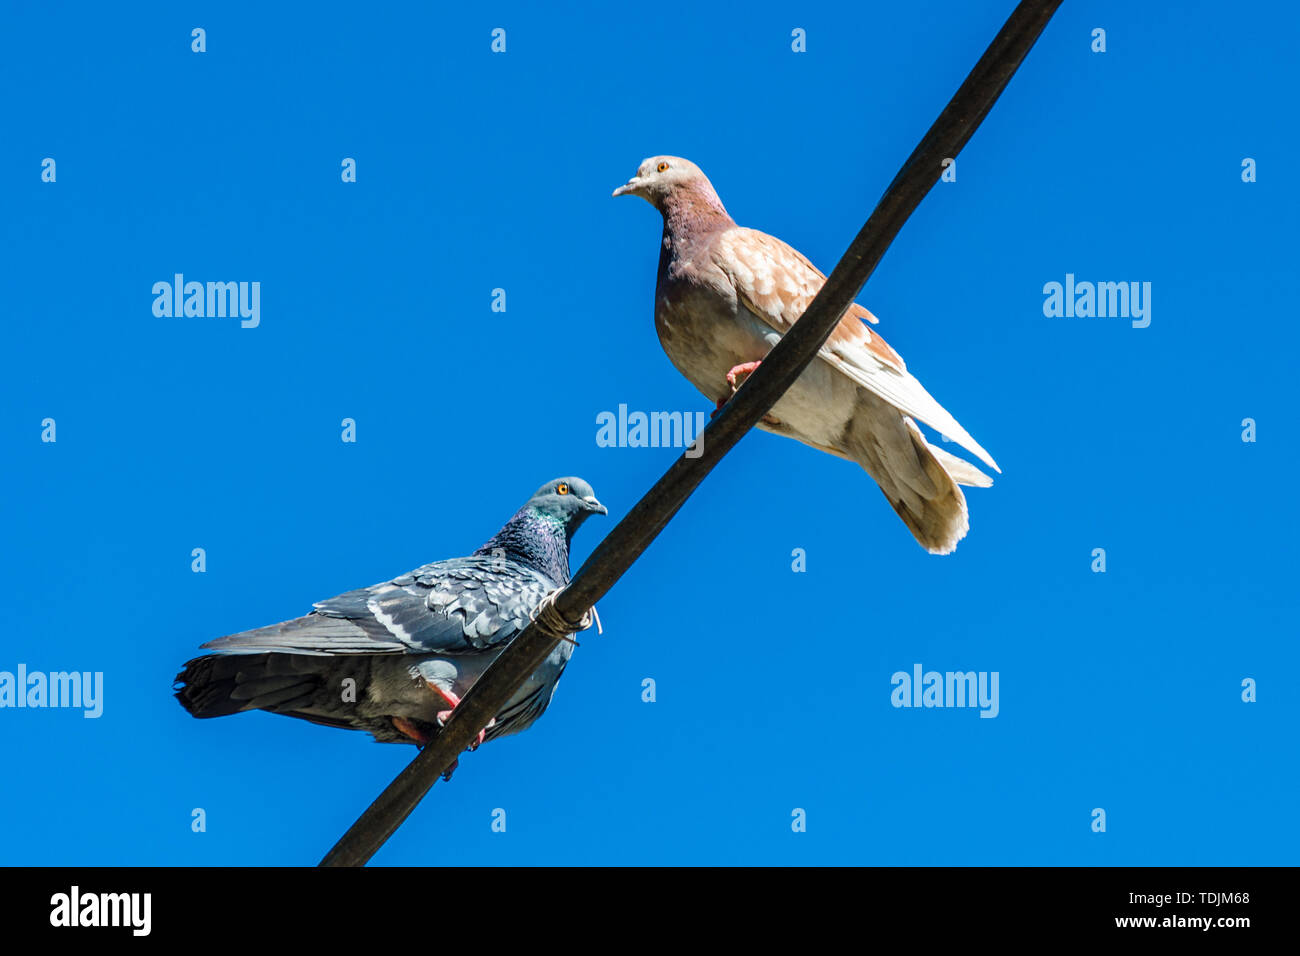 Licht und grauen Tauben liegt hoch auf einer Straße die Drähte gegen einen blauen Himmel. Nahaufnahme eines einsamen zwei städtische Tauben einander gegenüber sitzen. Ort Stockfoto